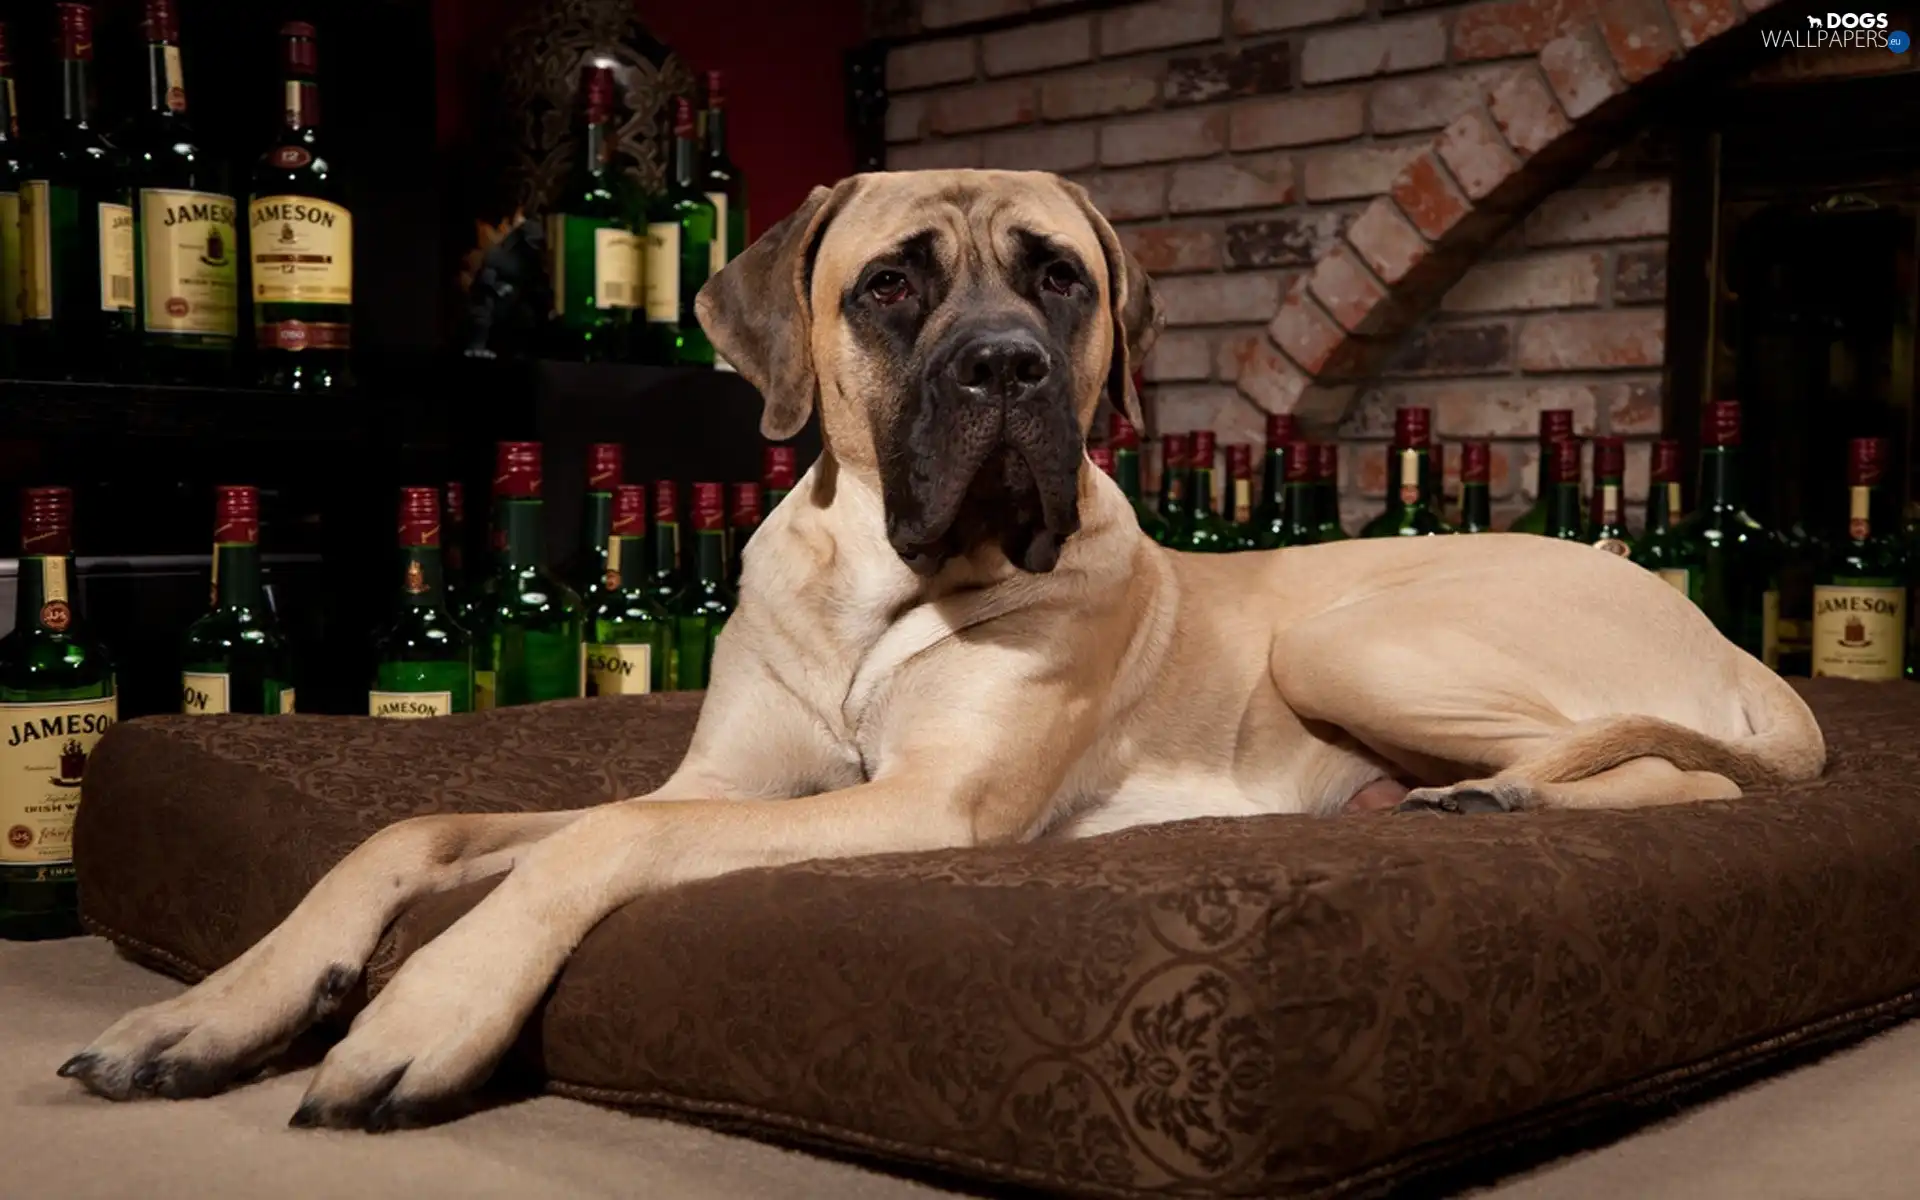 Dog, cushion, Bottles, Whisky